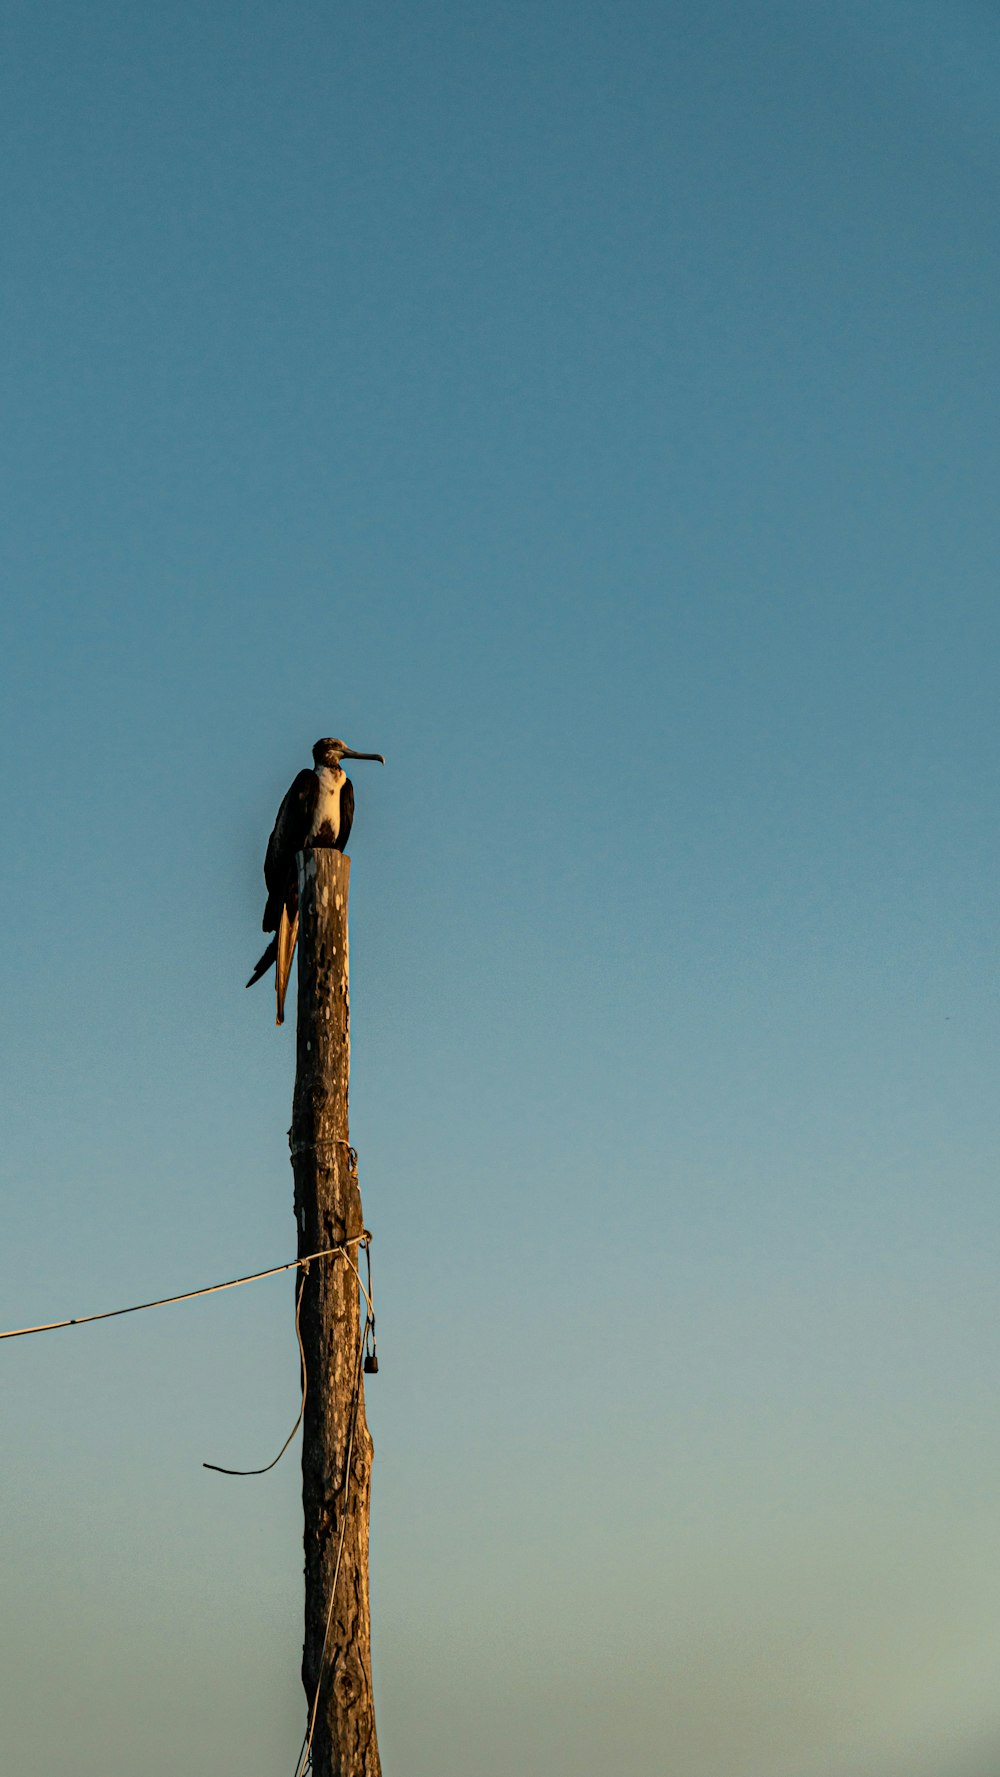 나무 기둥 위에 앉아 있는 새